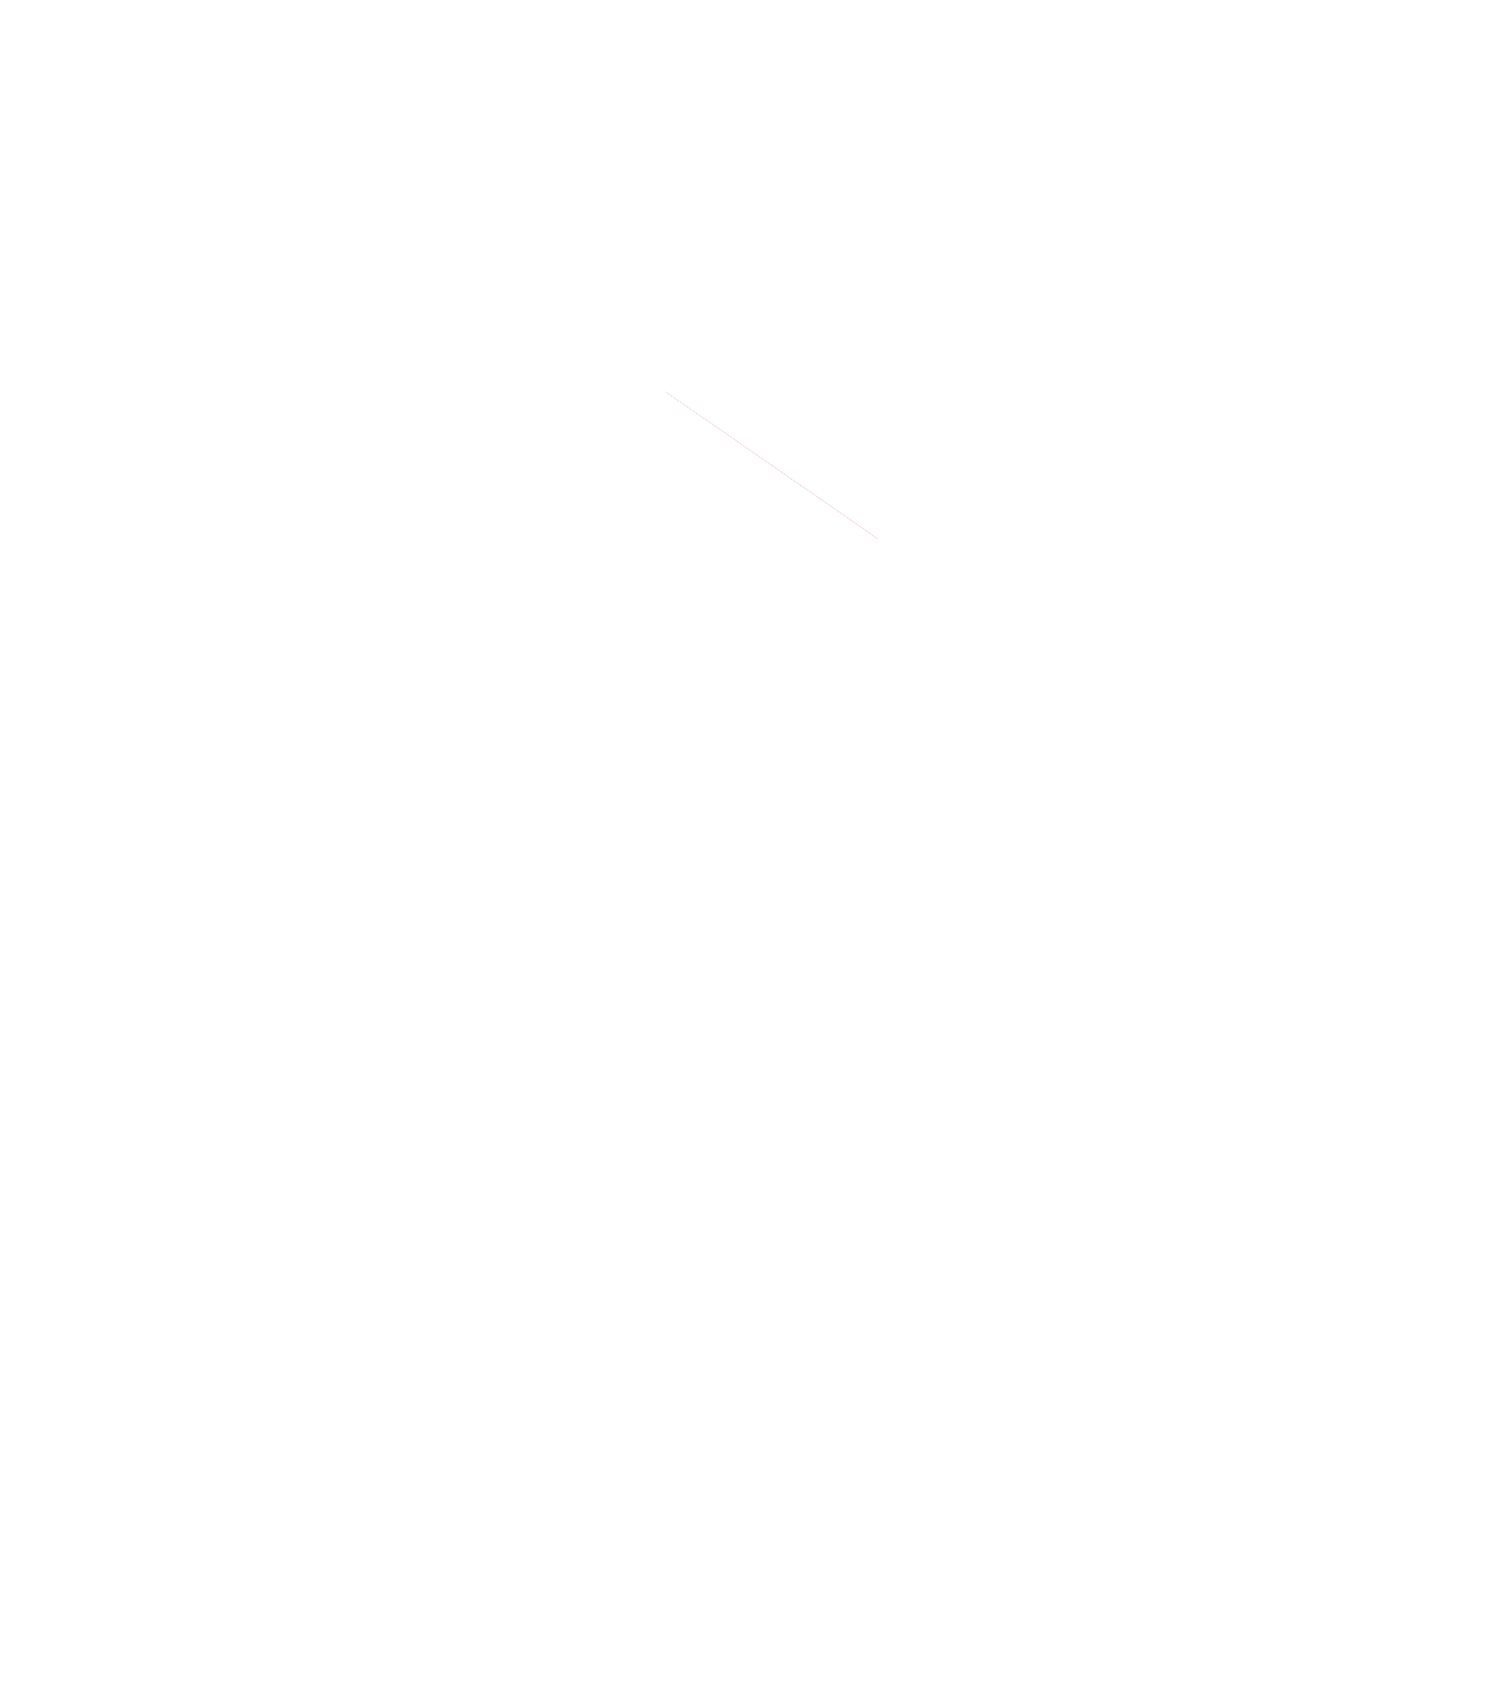 Scott Valley Scholarships